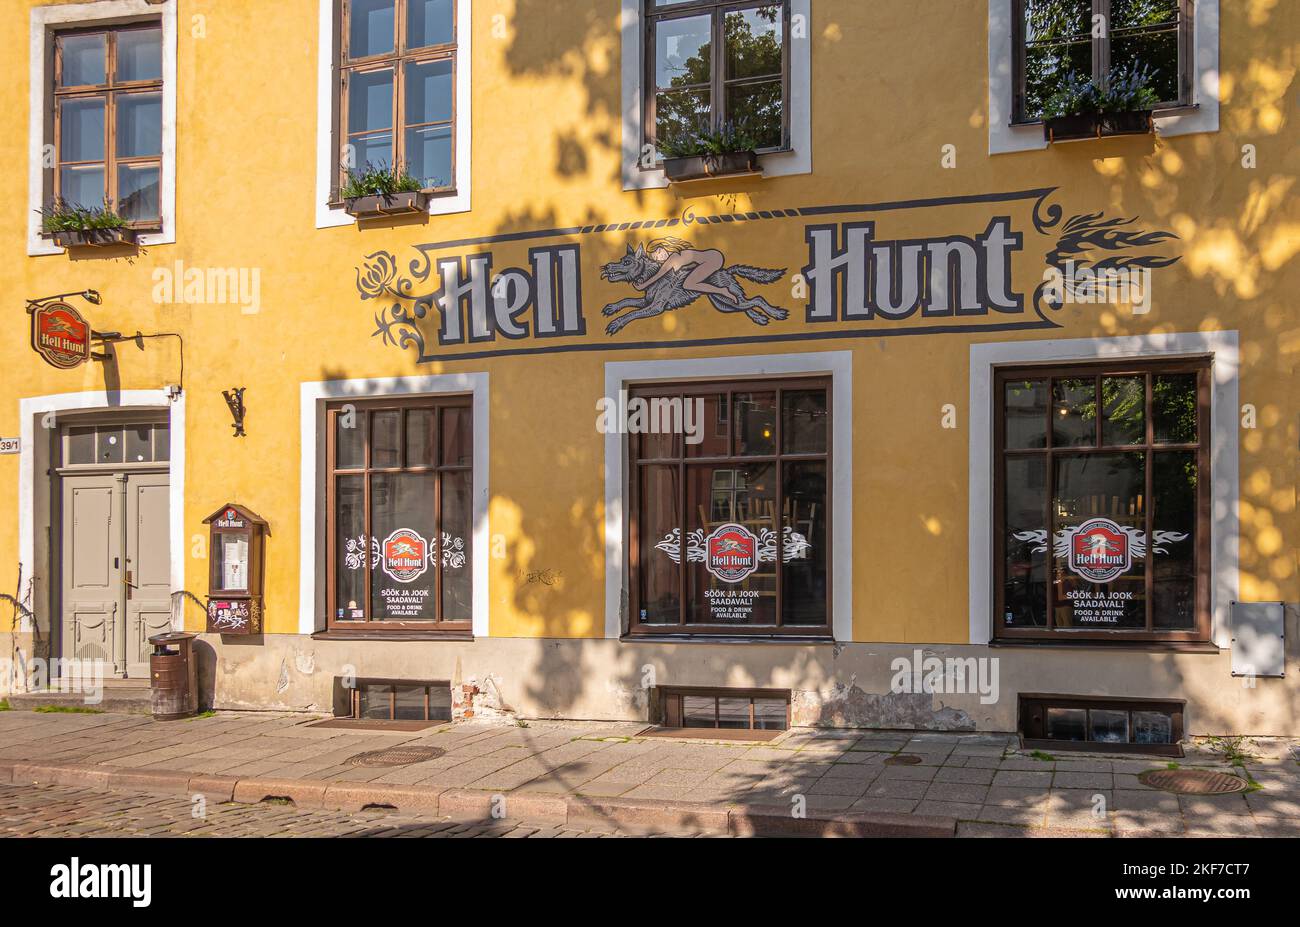 Estonia, Tallinn - 21 luglio 2022: Facciata gialla al pub Hell Hunt, bistro e ristorante con logo colorato, 3 grandi finestre e porta d'ingresso Foto Stock